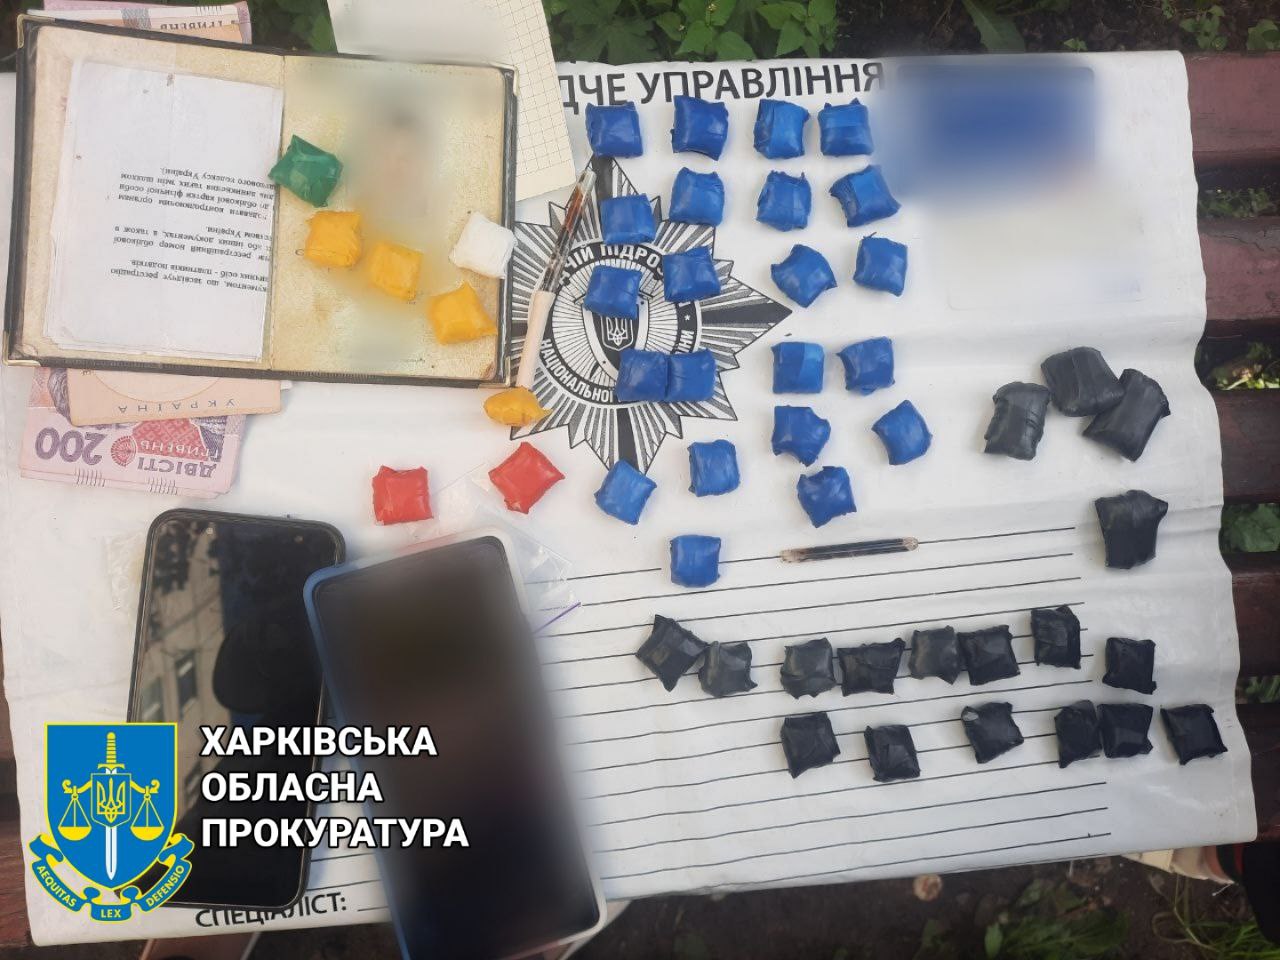 Криминал Харьков: Задержан закладчик с психотропами, под подозрением три человека